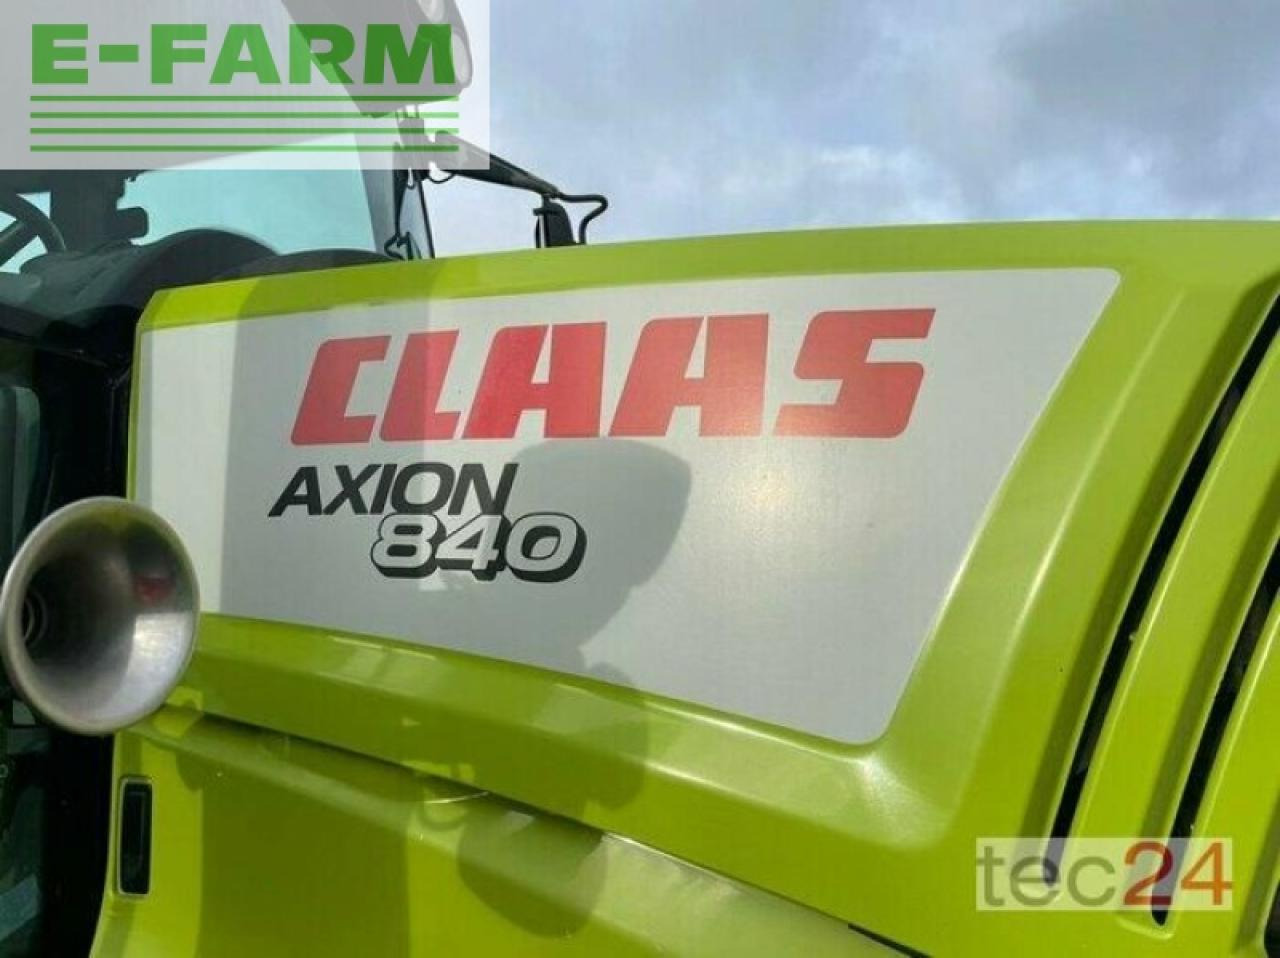 Tractor CLAAS axion 840 cvt